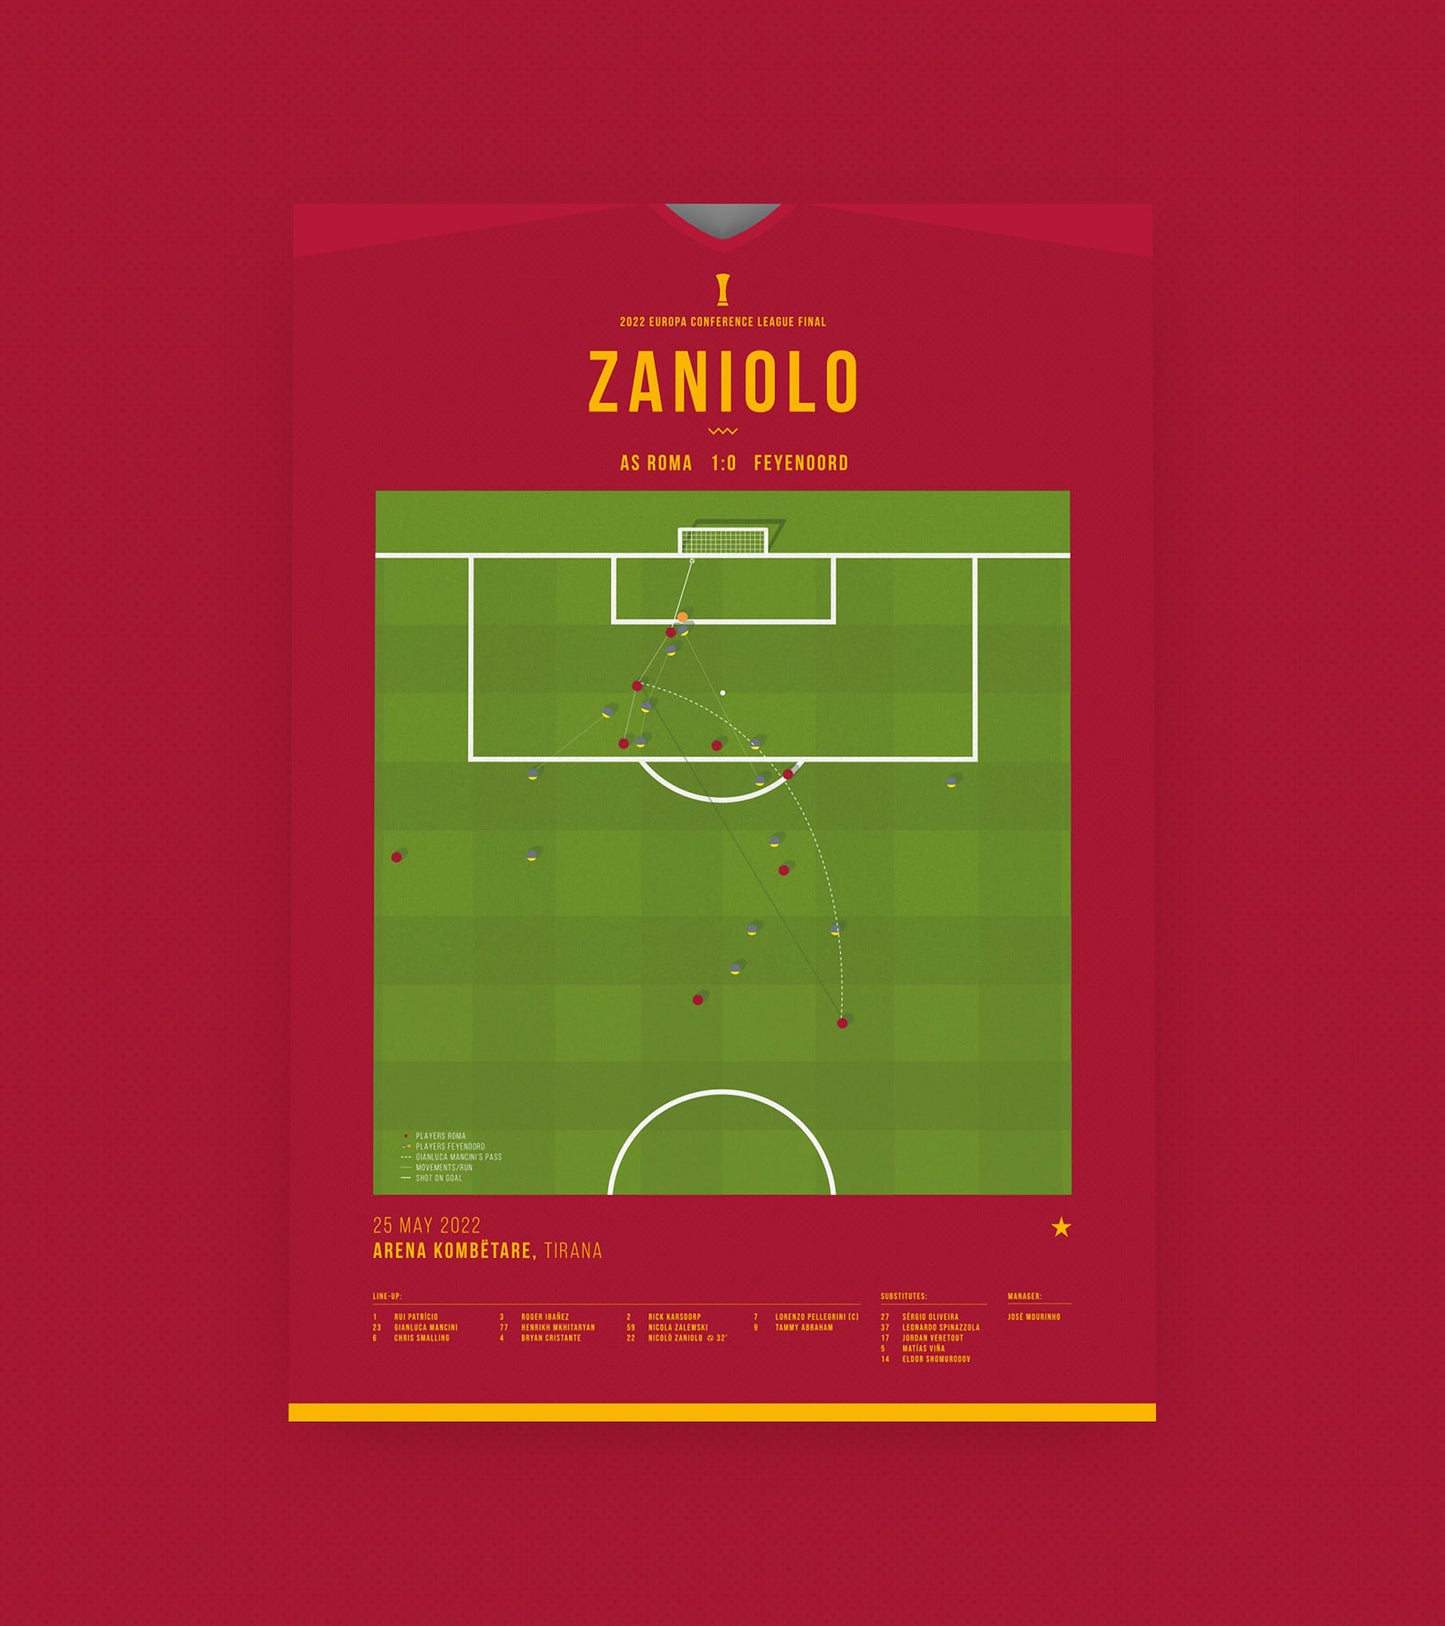 Le but de Zaniolo permet à la Roma de remporter son premier titre en Conference League